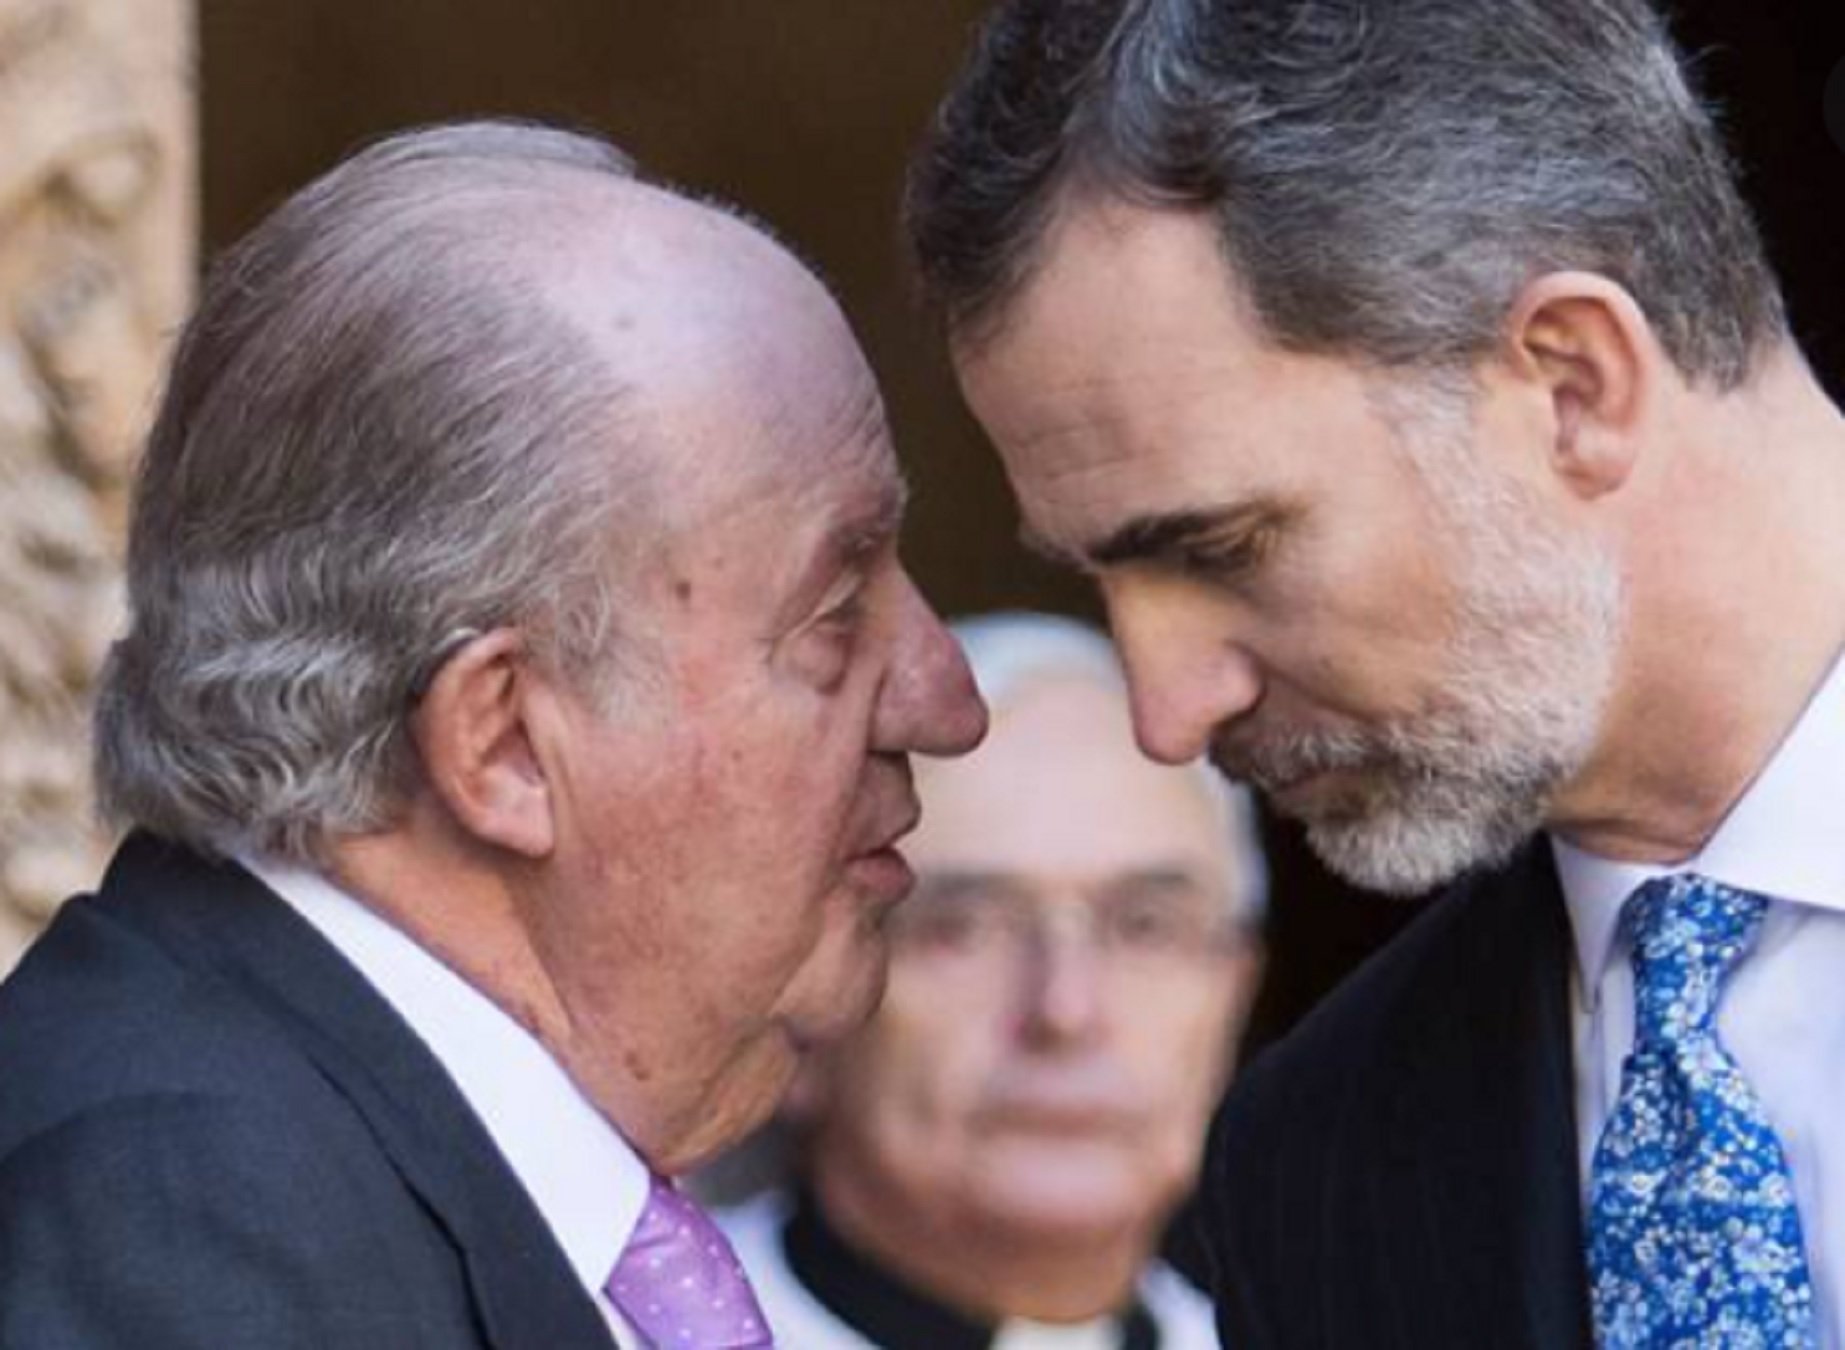 Felipe inflexible con Juan Carlos: "no" rotundo a su petición de última hora